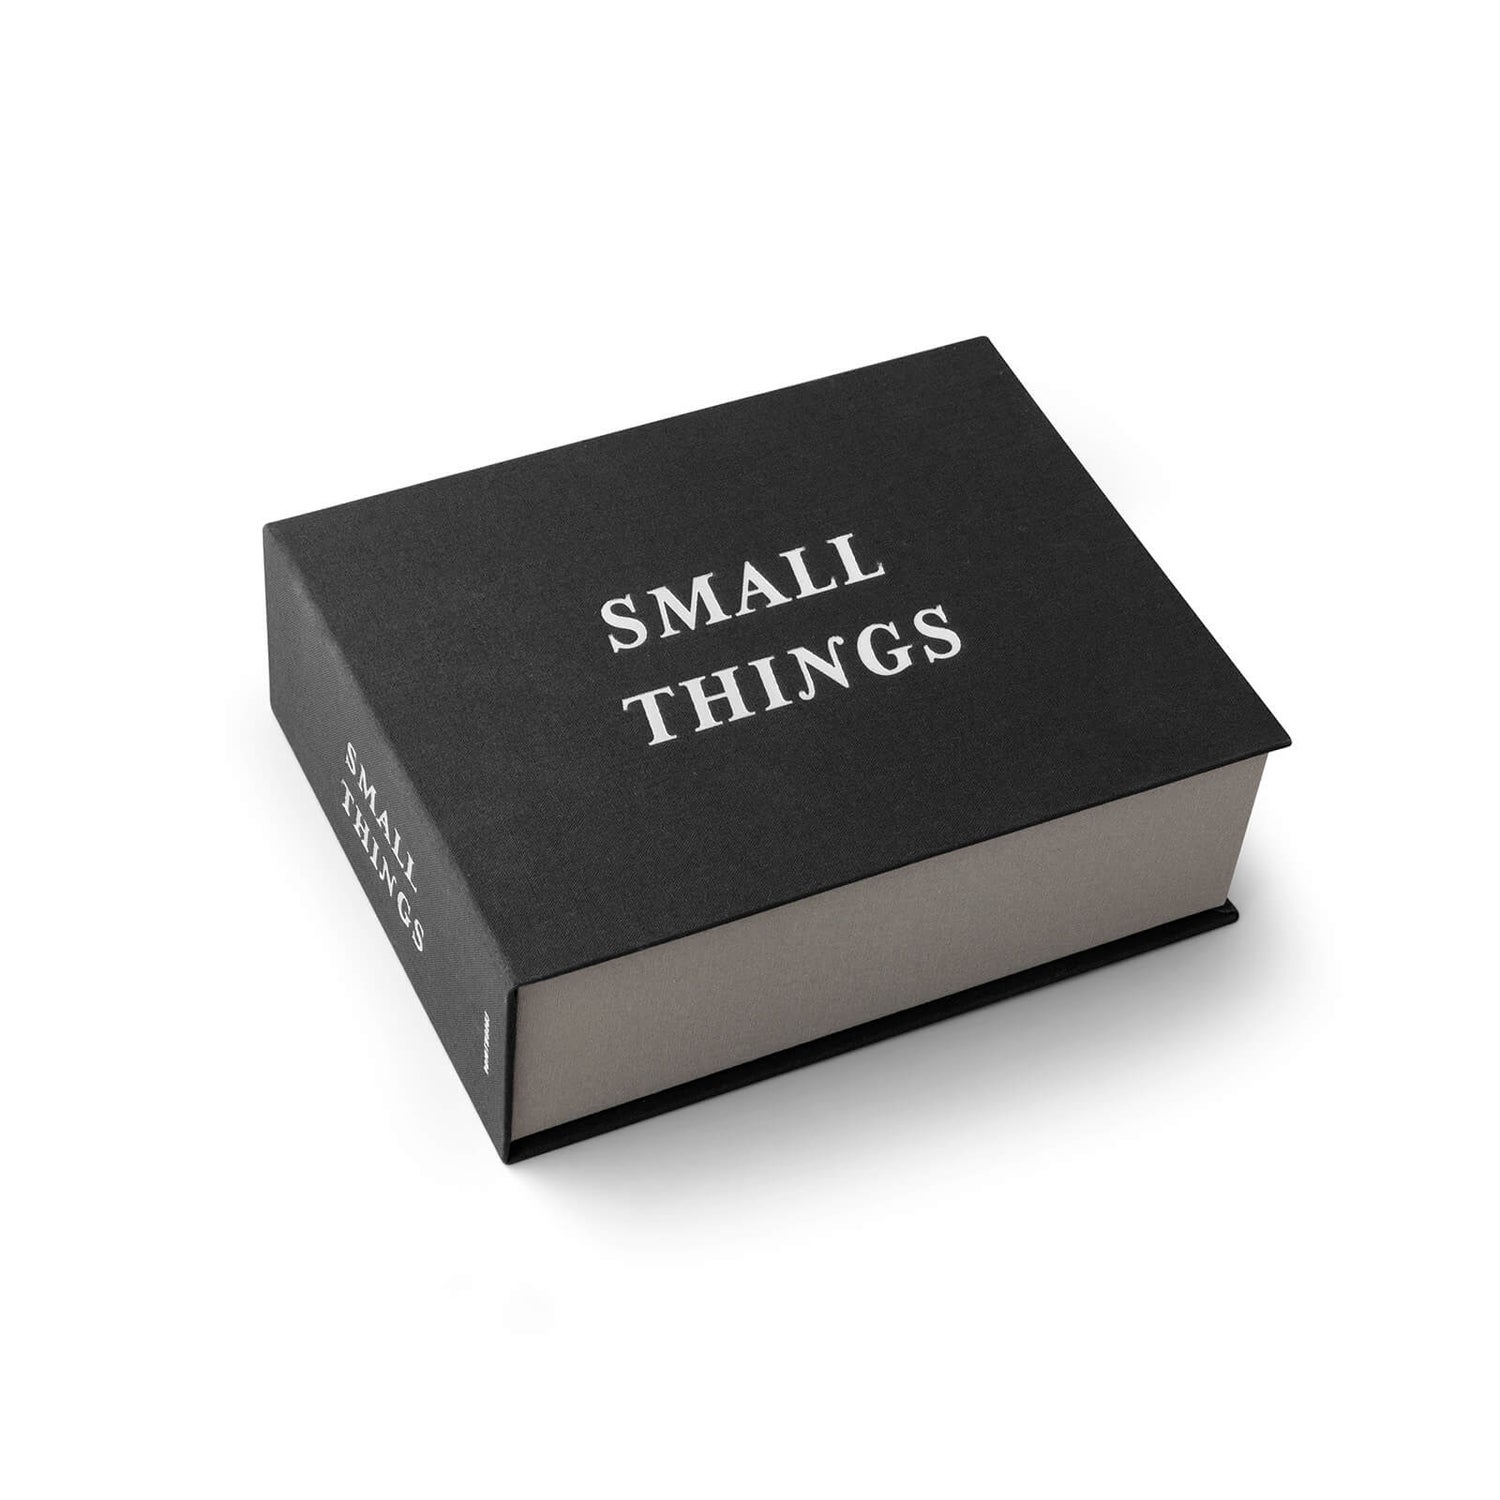 Printworks Small Things Storage Box - Black